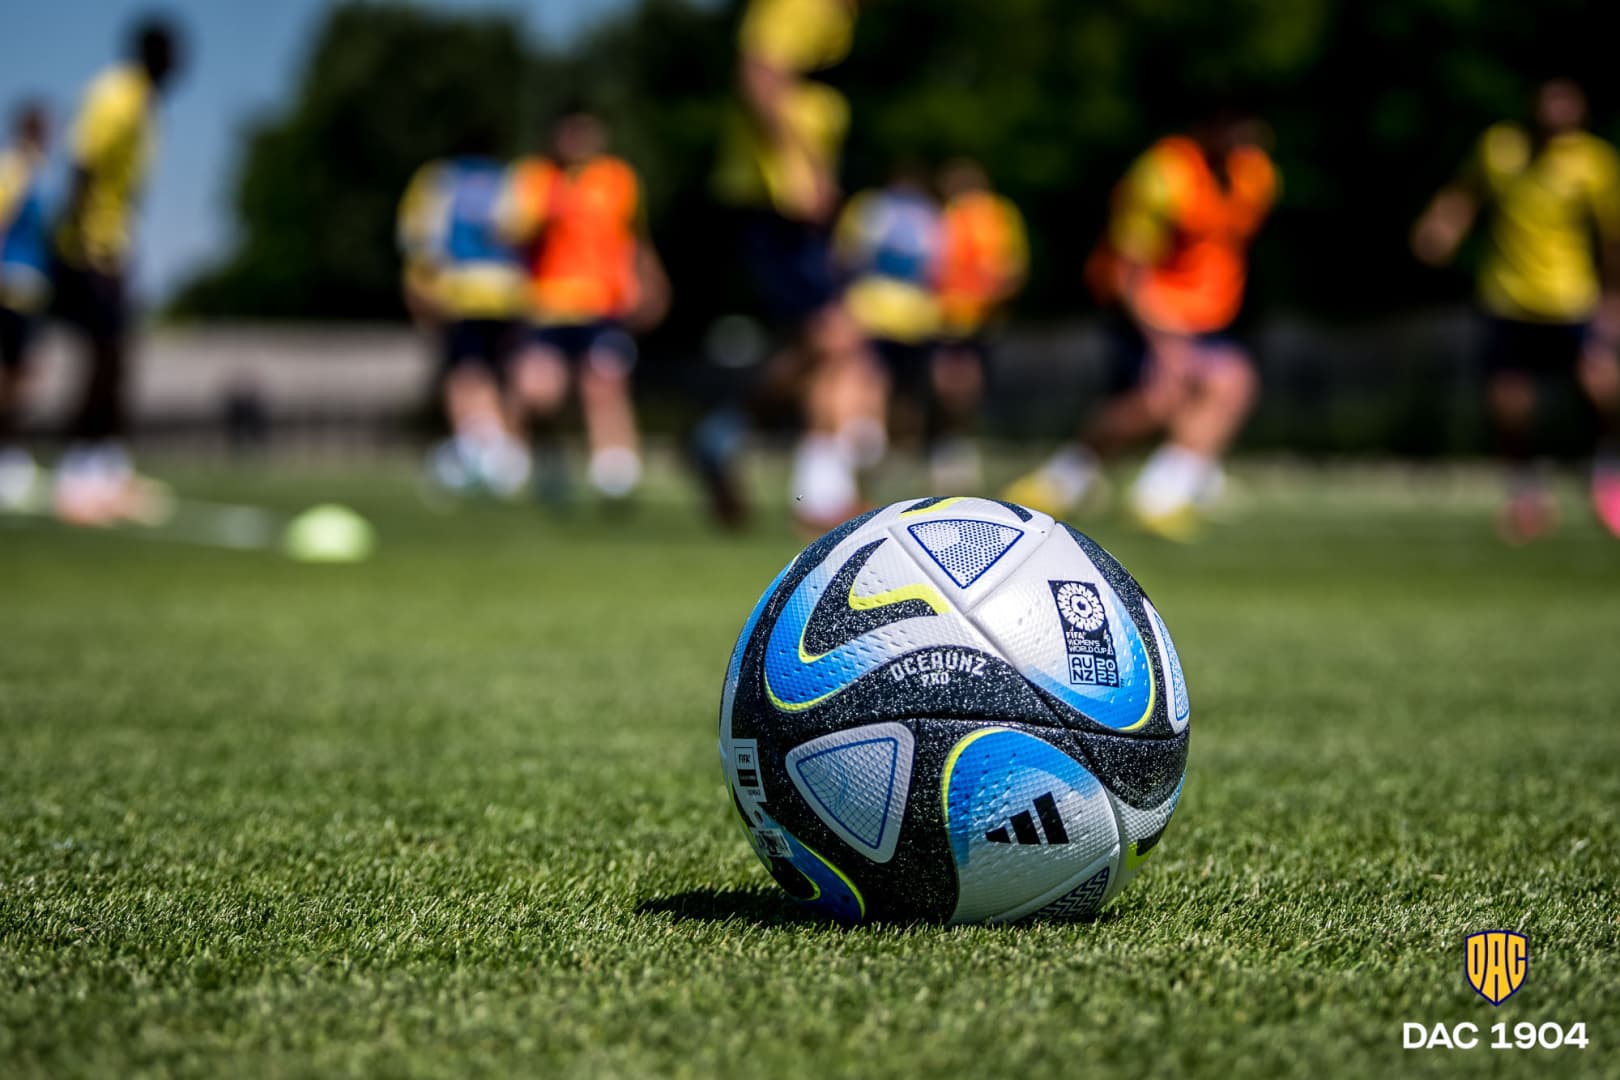 Nem a kapusok álma, de meg lehet szokni – jönnek az új labdák a Fortuna Ligában